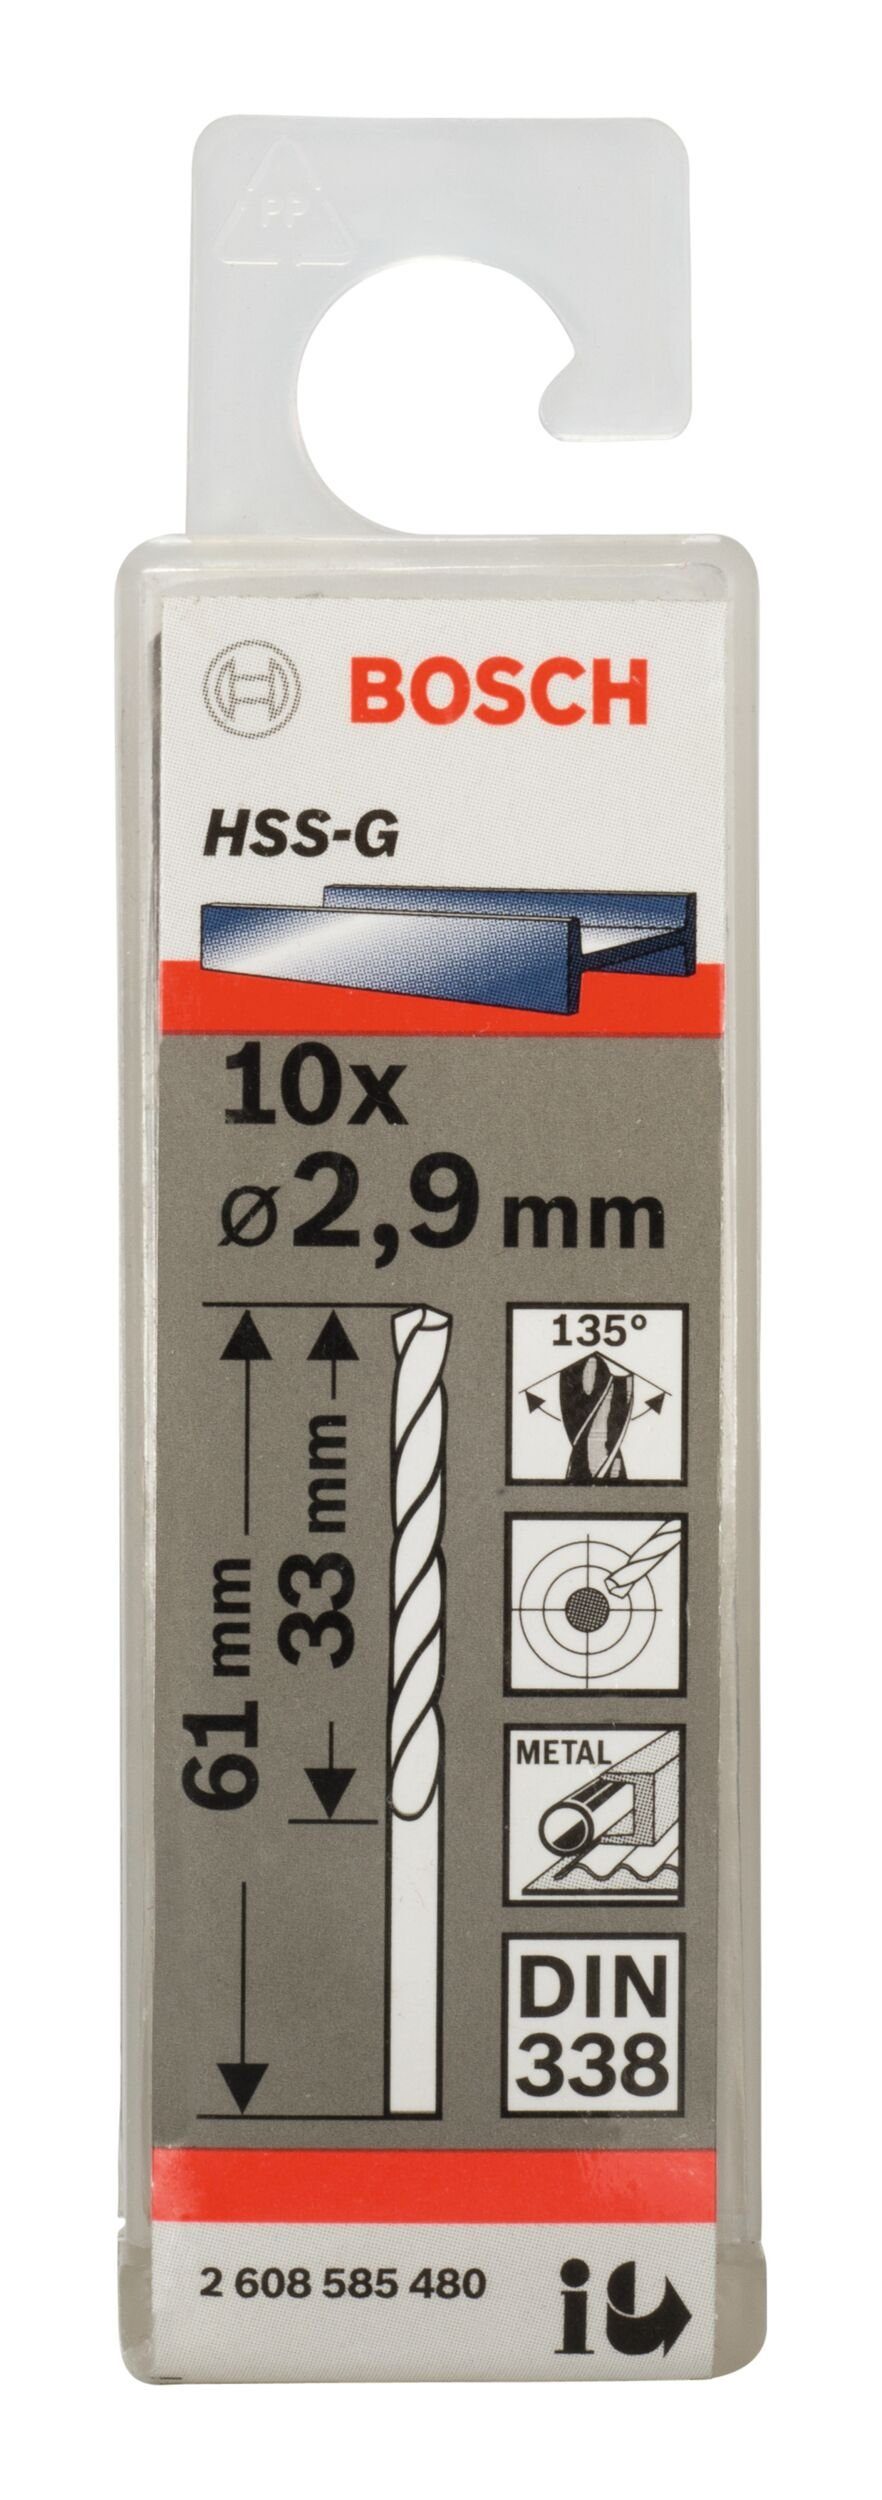 mm 61 - BOSCH HSS-G (10 Metallbohrer, x Stück), 10er-Pack (DIN - 338) 2,9 x 33